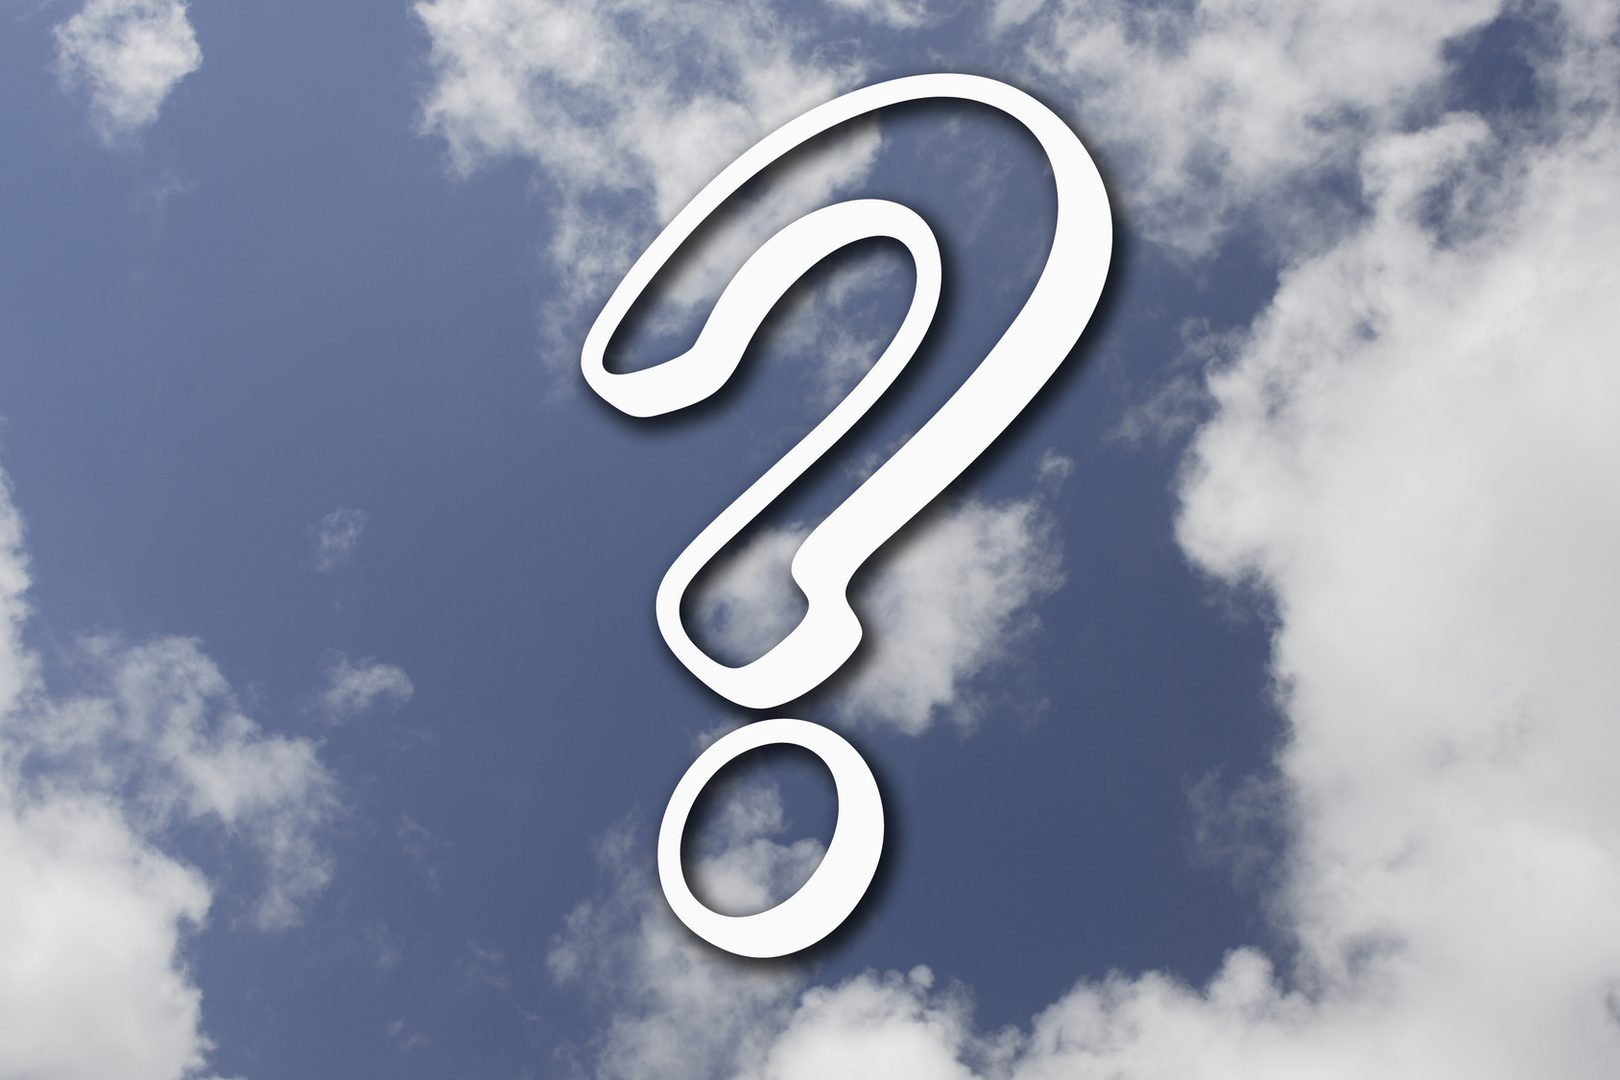 Un point d'interrogation devant un ciel nuageux. Image pour démontre les nombreuses questions qui peuvent exister, question existentielles ou pas.